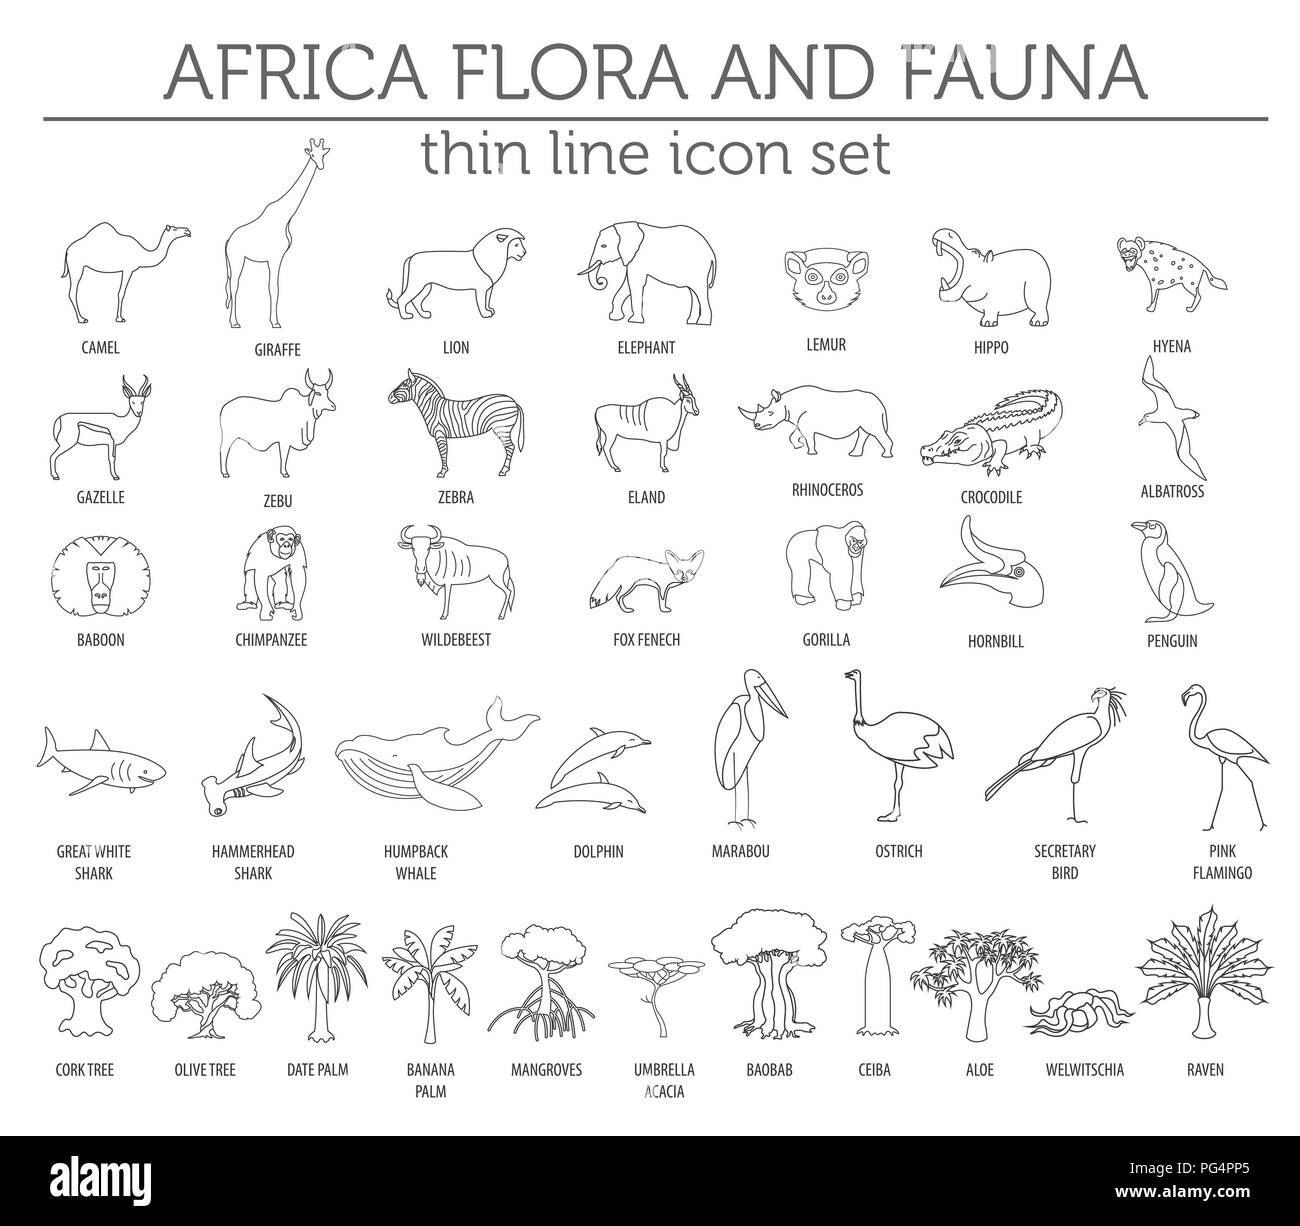 Dünne Linie Afrika Flora und Fauna Elemente. Tiere, Vögel und Sea Life auf Weiß große isoliert. Ihre eigene Geographie Infografiken Sammlung aufzubauen. Ve Stock Vektor